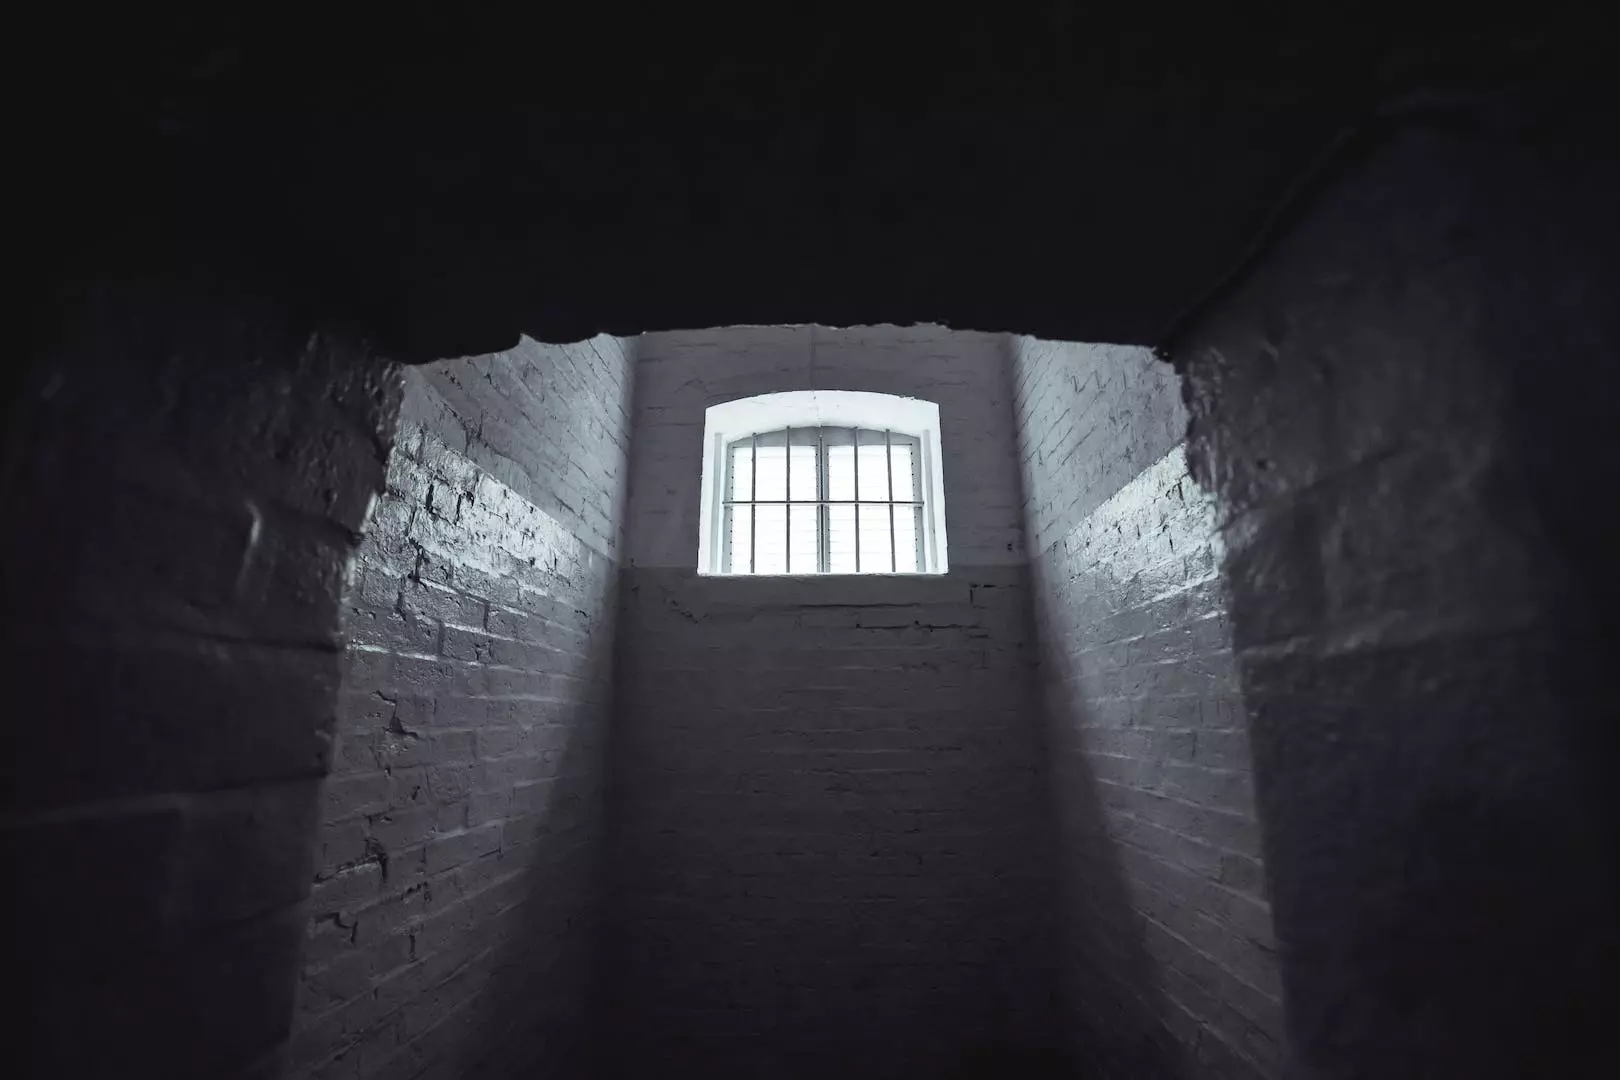 Betinget fengsel definisjon: En ny vei mot rehabilitering og samfunnsengasjement